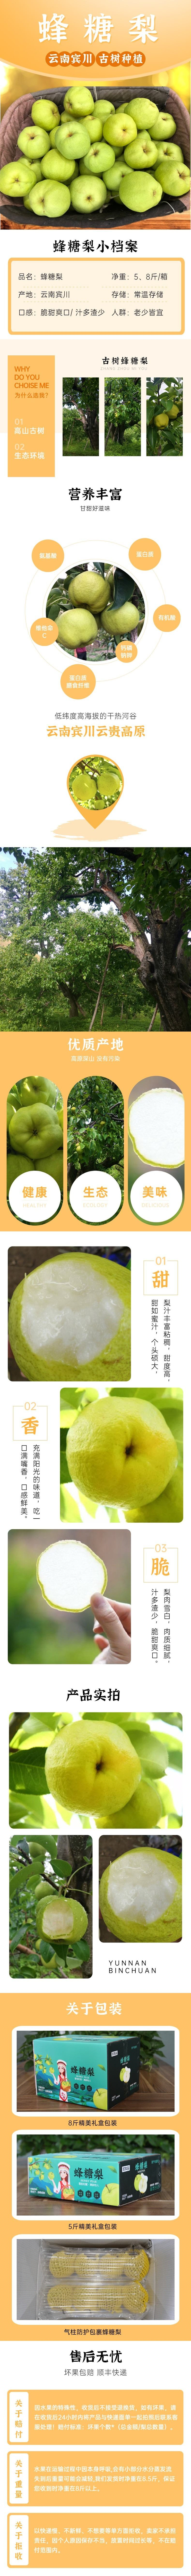 生鲜食品水果柚子详情页.jpg